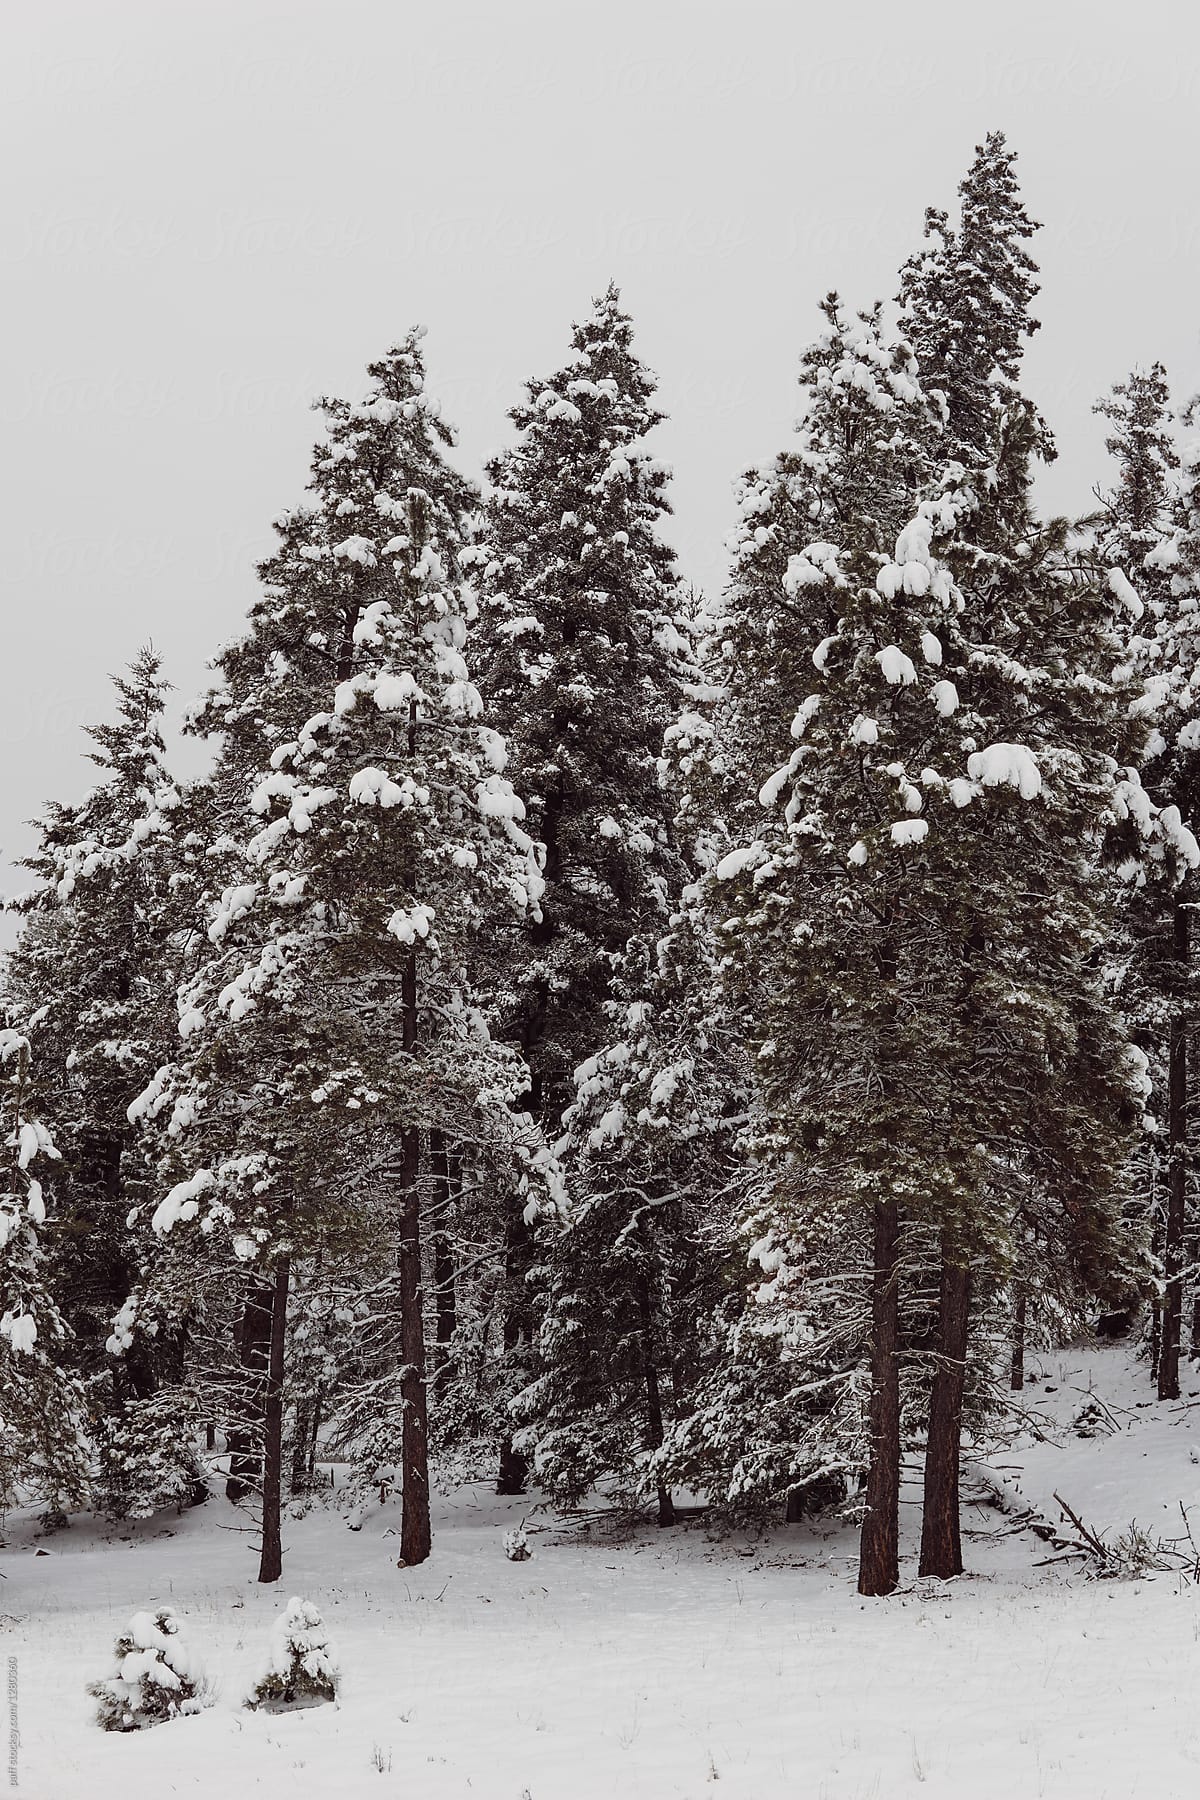 Beautiful snowy winter wonderland landscape